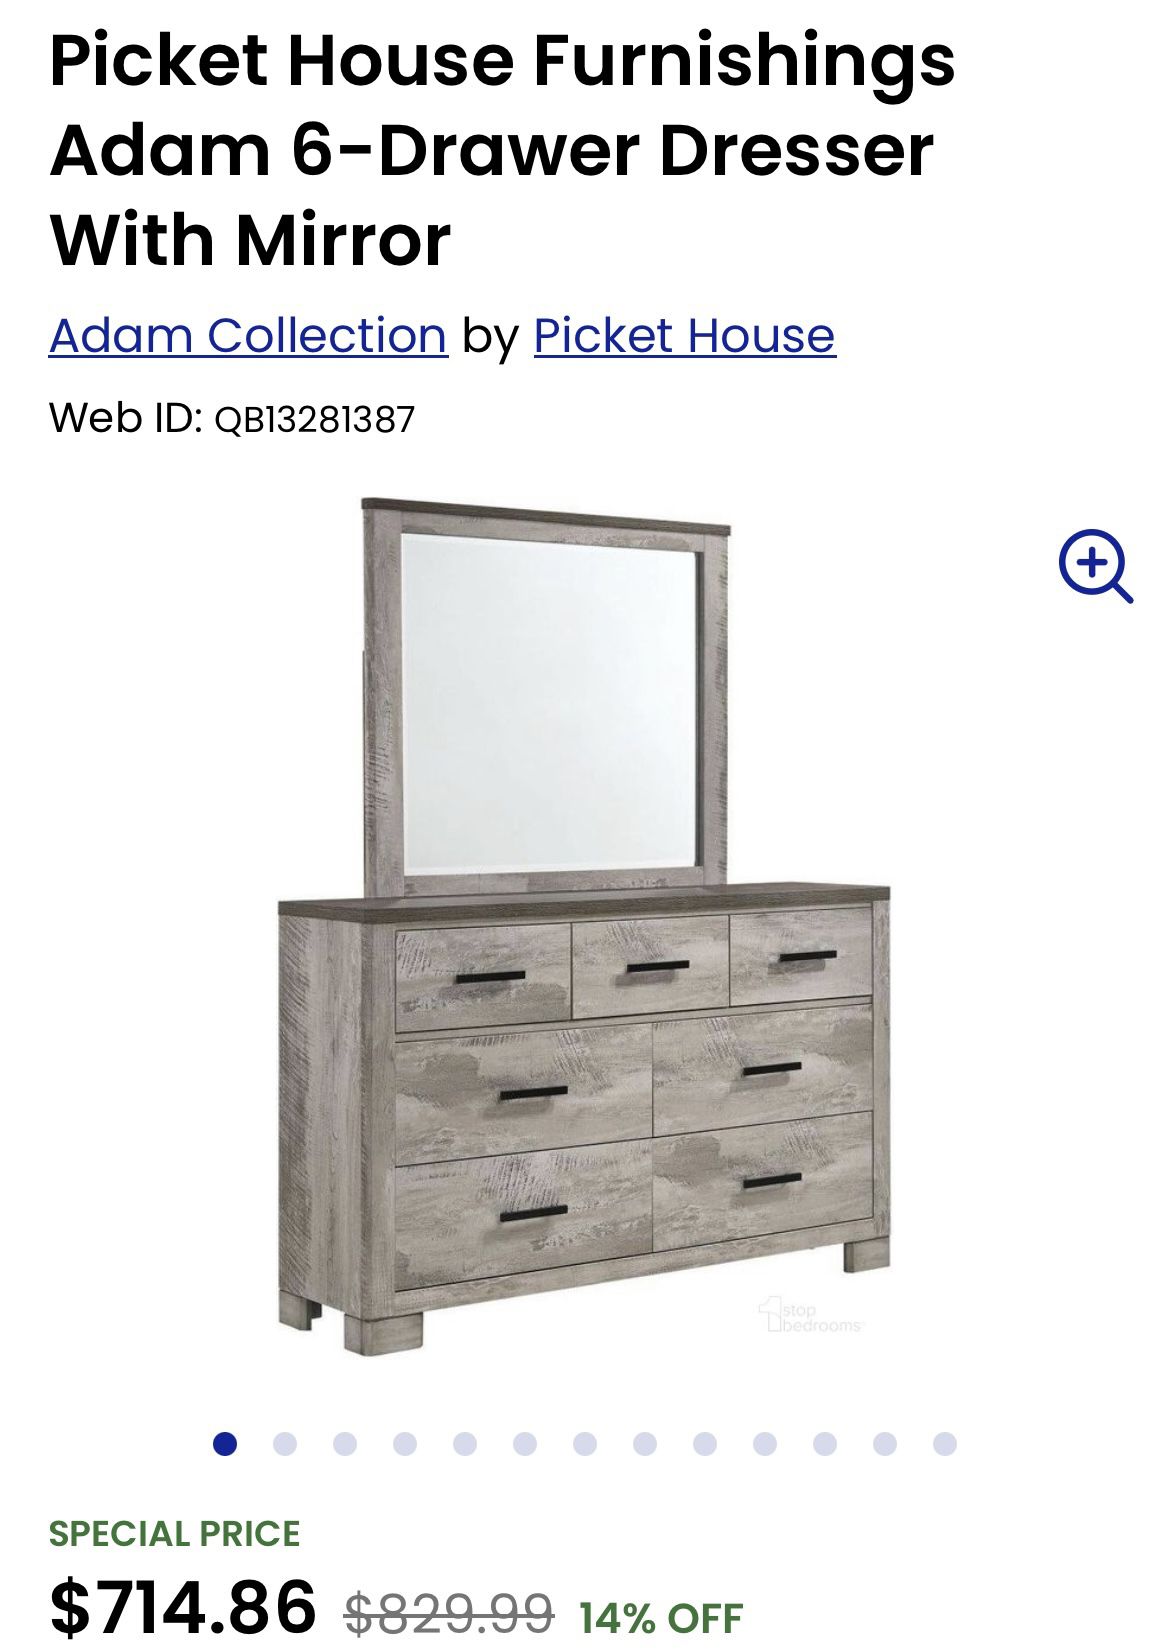 Brand New Dresser with Mirror - still in box 